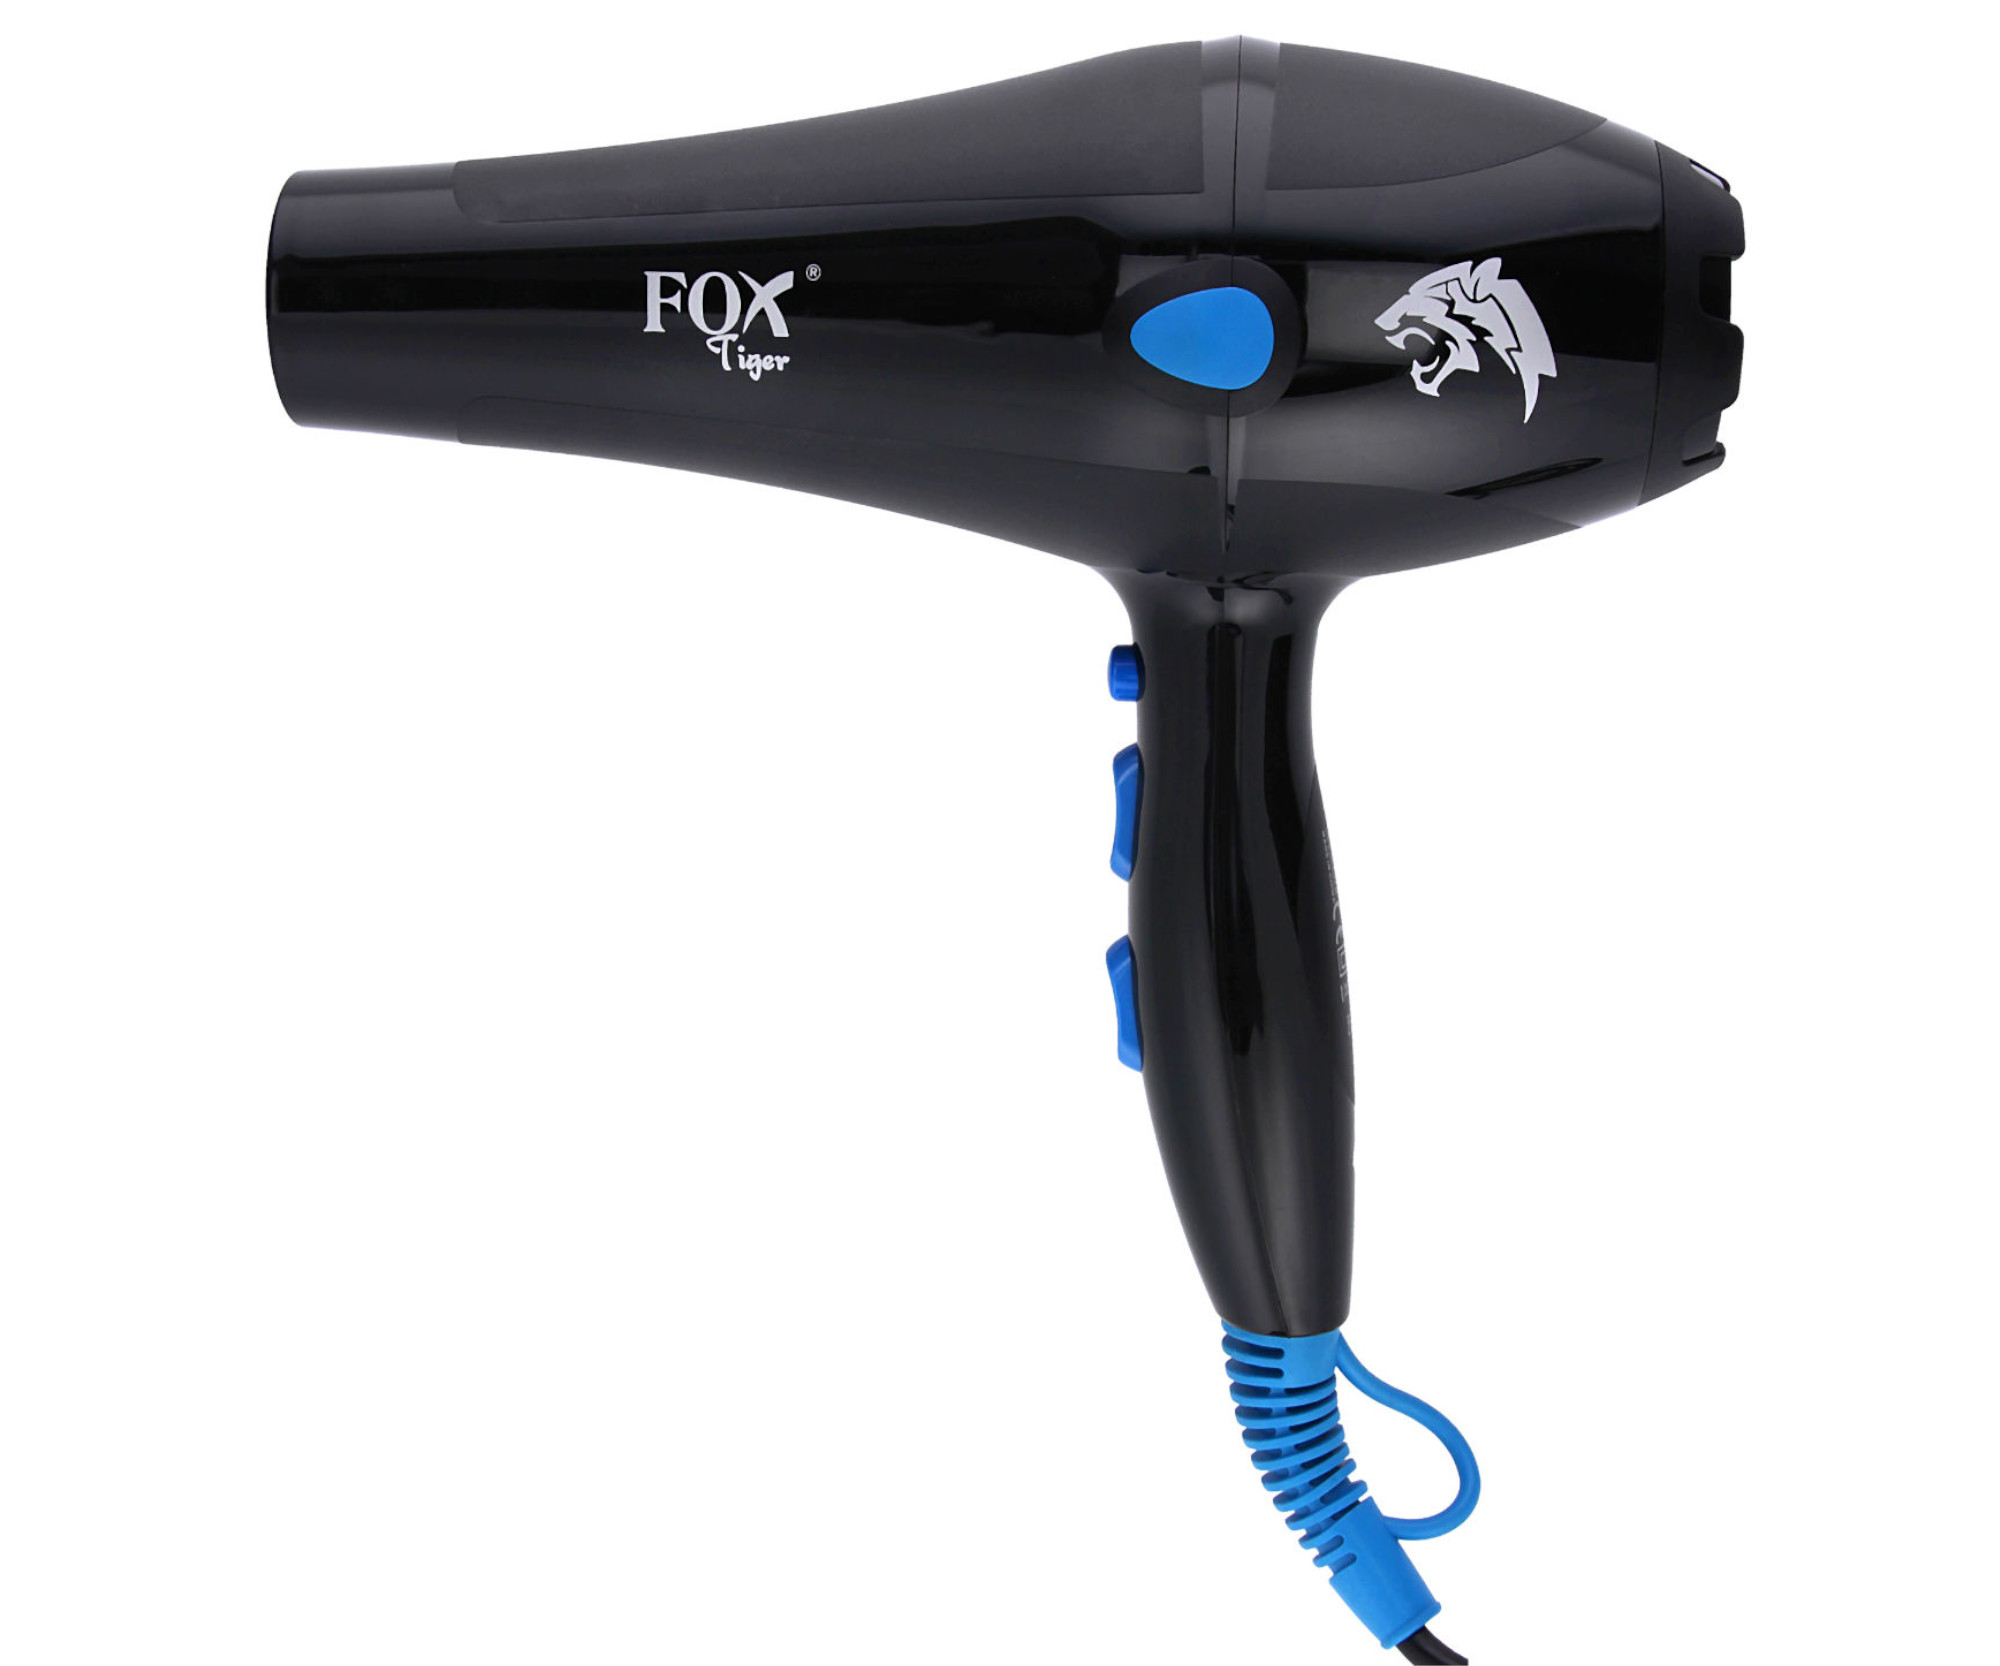 Profesionální fén na vlasy Fox Tiger - 2400 W, černý (1303049) + dárek zdarma